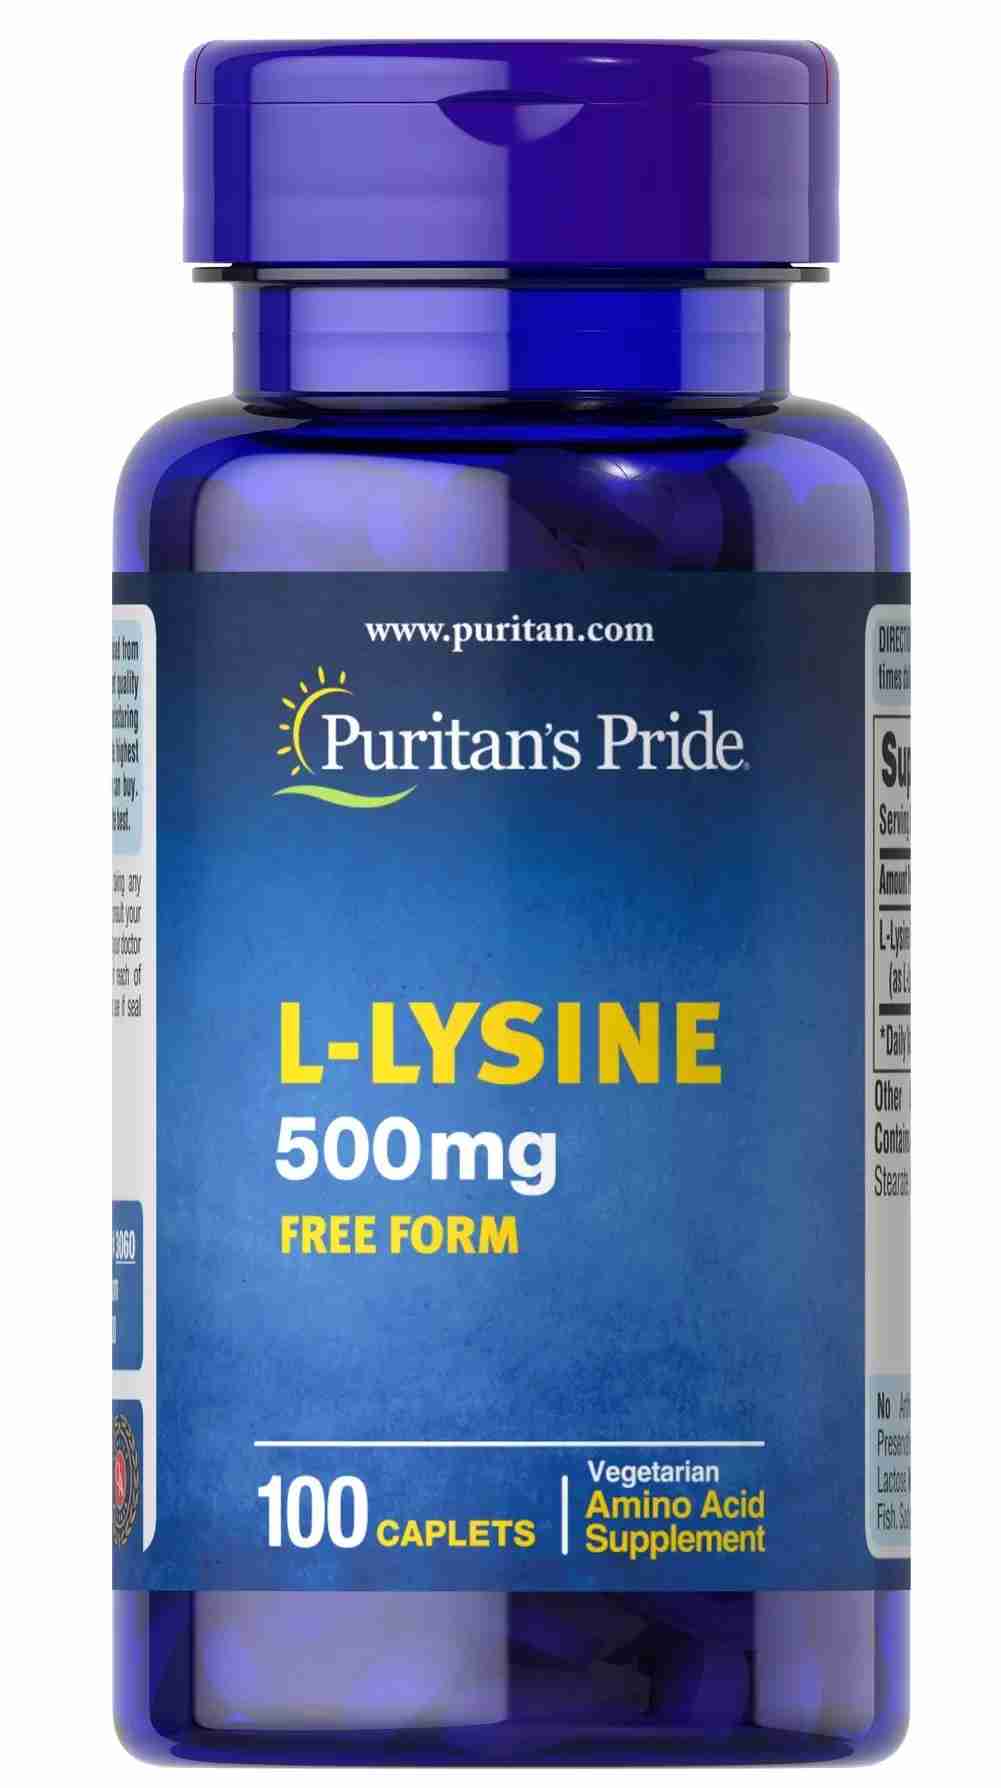 Viên Uống Puritan's Pride L-Lysine 500mg Hỗ Trợ Tăng Cân ảnh 2